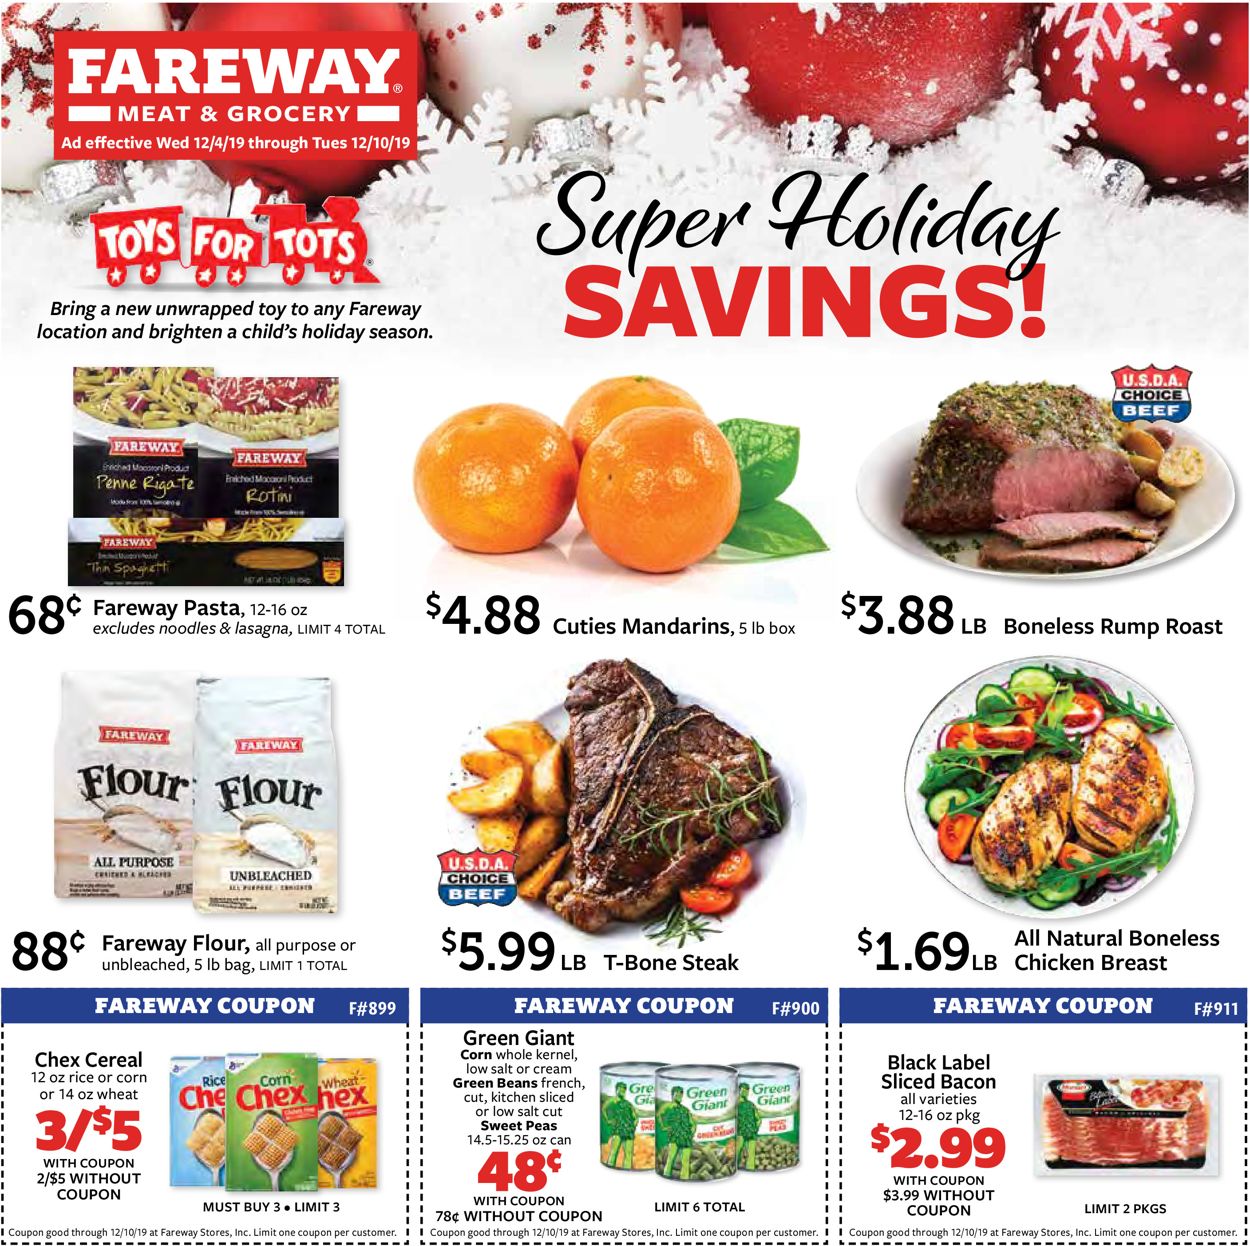 Catalogue Fareway - Holidays Savings 2019 from 12/04/2019